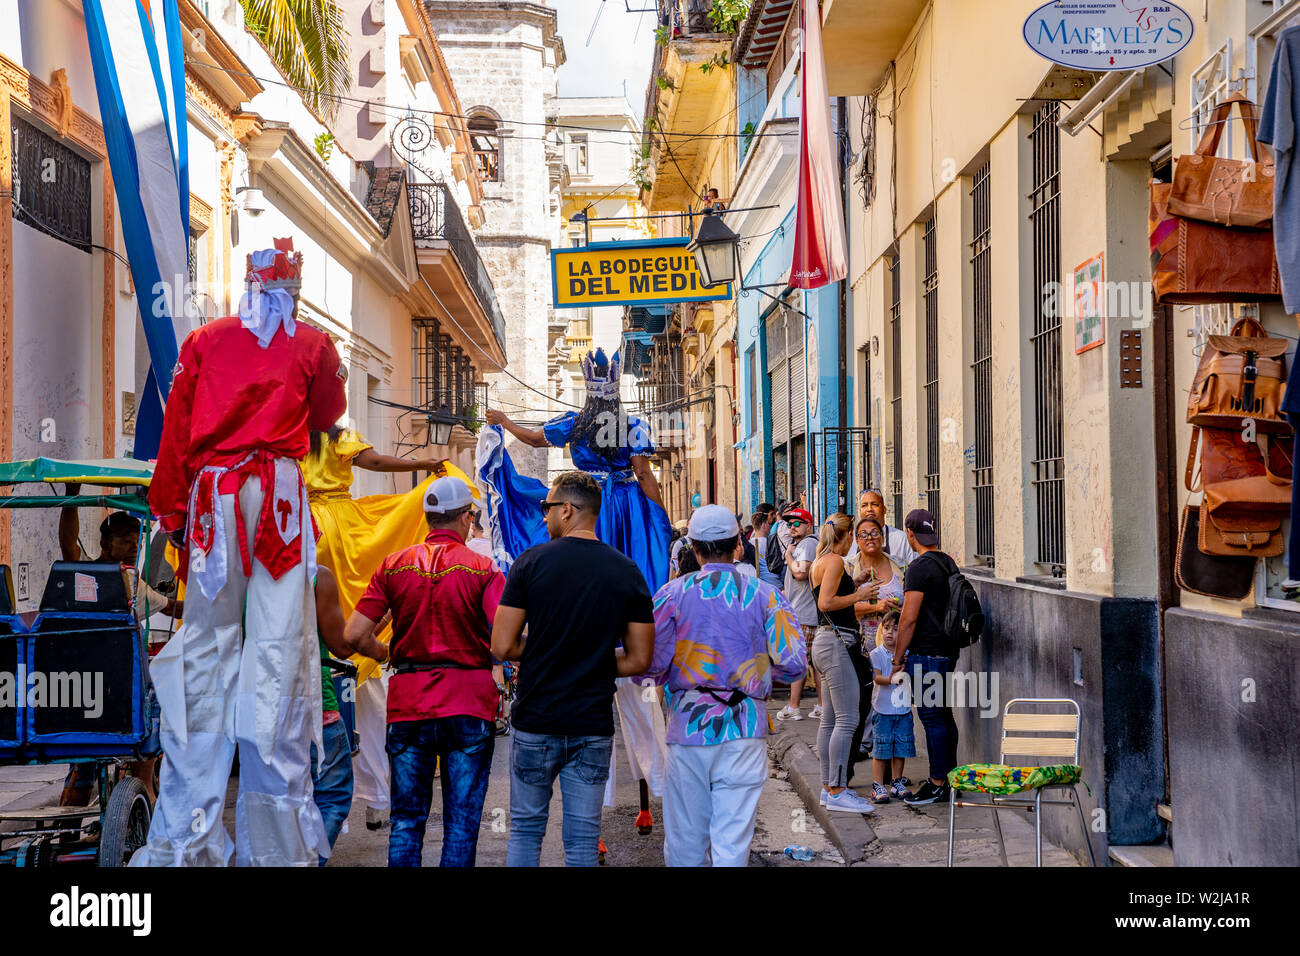 Vecchia Havana, Cuba - Gennaio 2, 2019: palafitte e musicisti di avviare una improvvisata street parte vicino alla famosa La Bodegita del Medio ristorante. Foto Stock